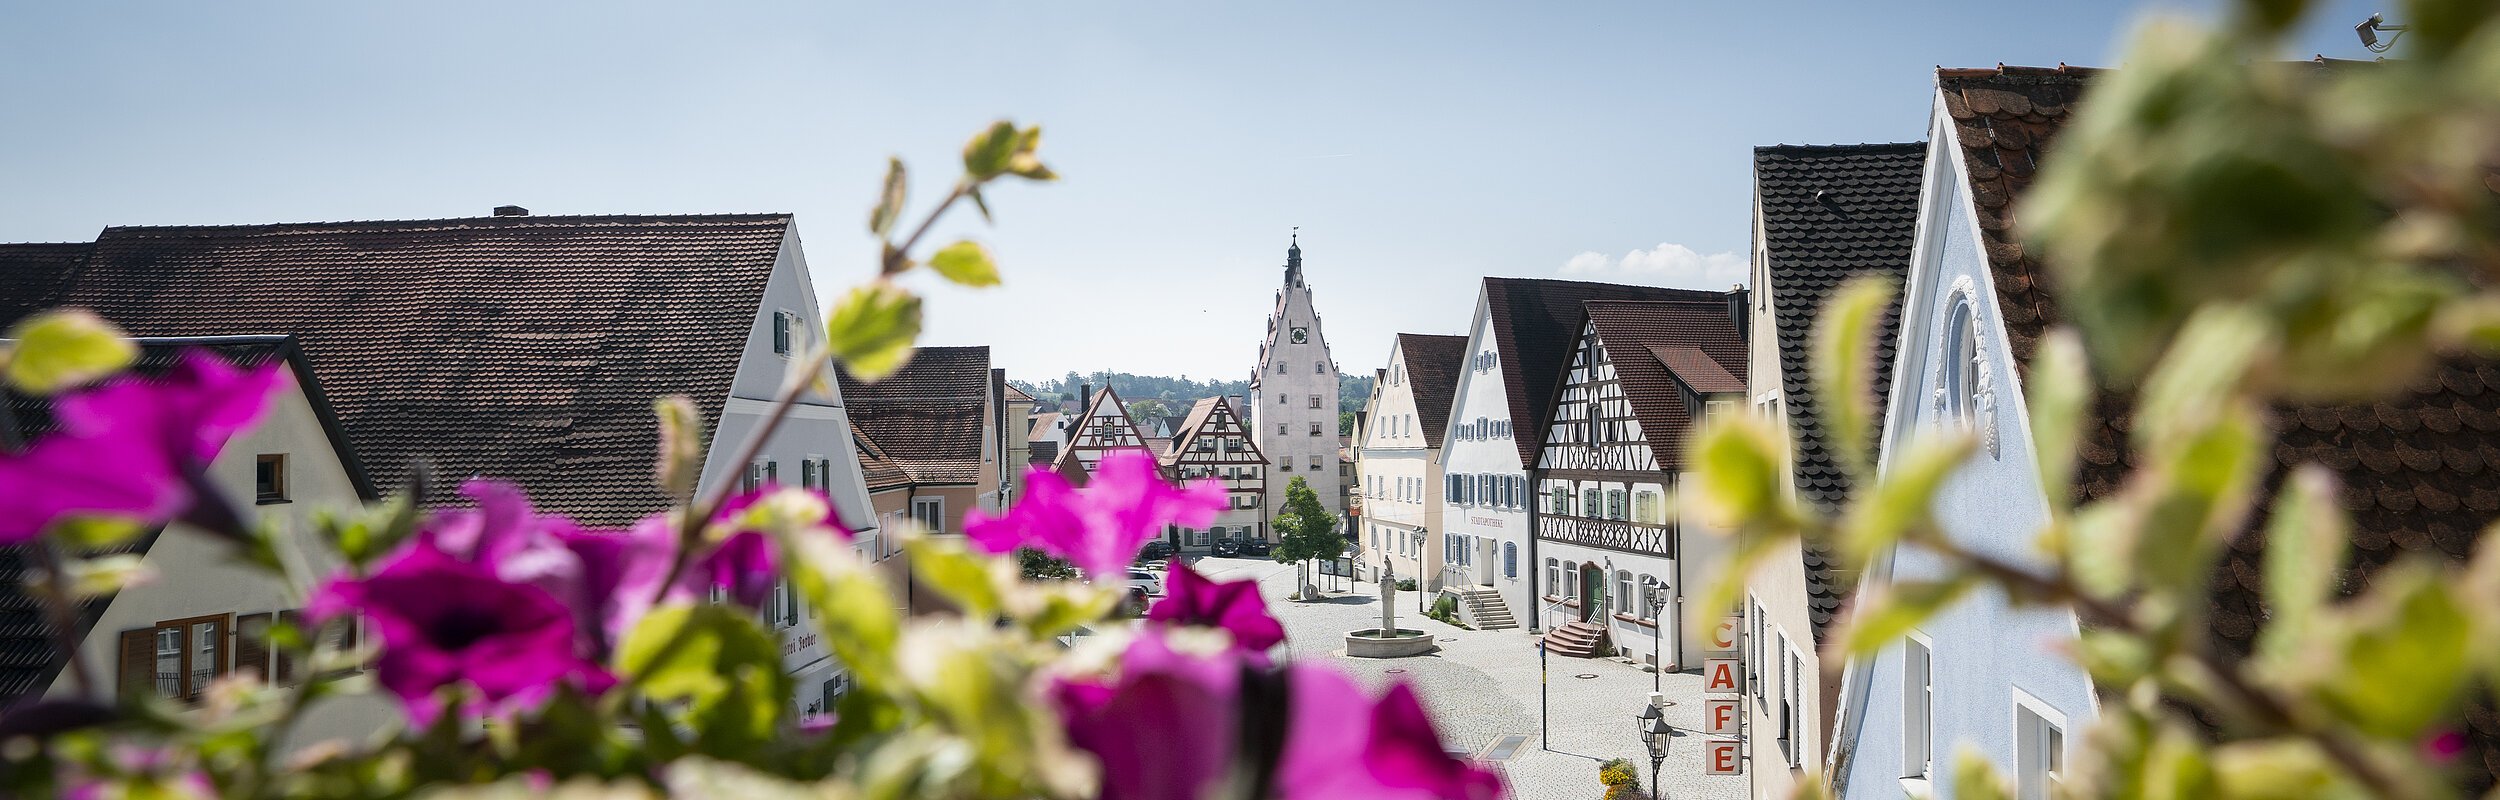 Aussicht aus dem Rathaus auf die Historische Monheimer Innenstadt